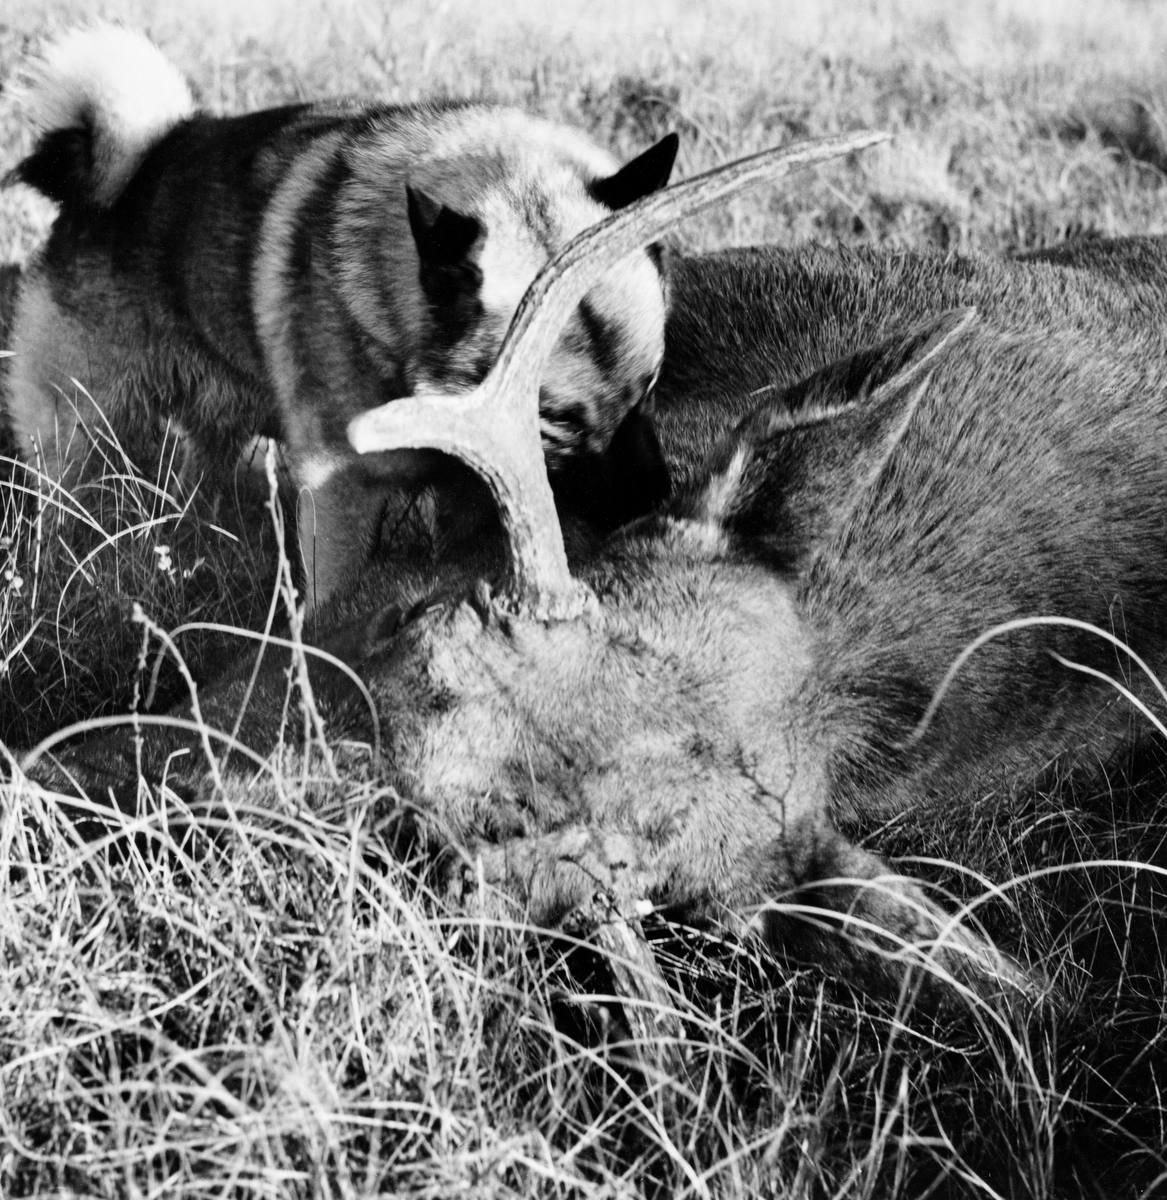 Hans Bergers elghund Pan snuser mot halspartiet på en elgokse eieren nettopp hadde skutt på Hesjagolvmyra i Slemdalen i Nordre Osen (Åmot i Hedmark).  Bildet er er tatt 30. september 1972, etter jakt med løs hund.  Grå elghund er en spisshundrase, som særlig brukes under jakt på storvilt.  Den kalles også gråhund.  Rasen er skapt gjennom selektiv avl fra 1800-tallet og framover.  Elghunden er kåret til «Norges nasjonalhund». Elgjakt. Storviltjakt.